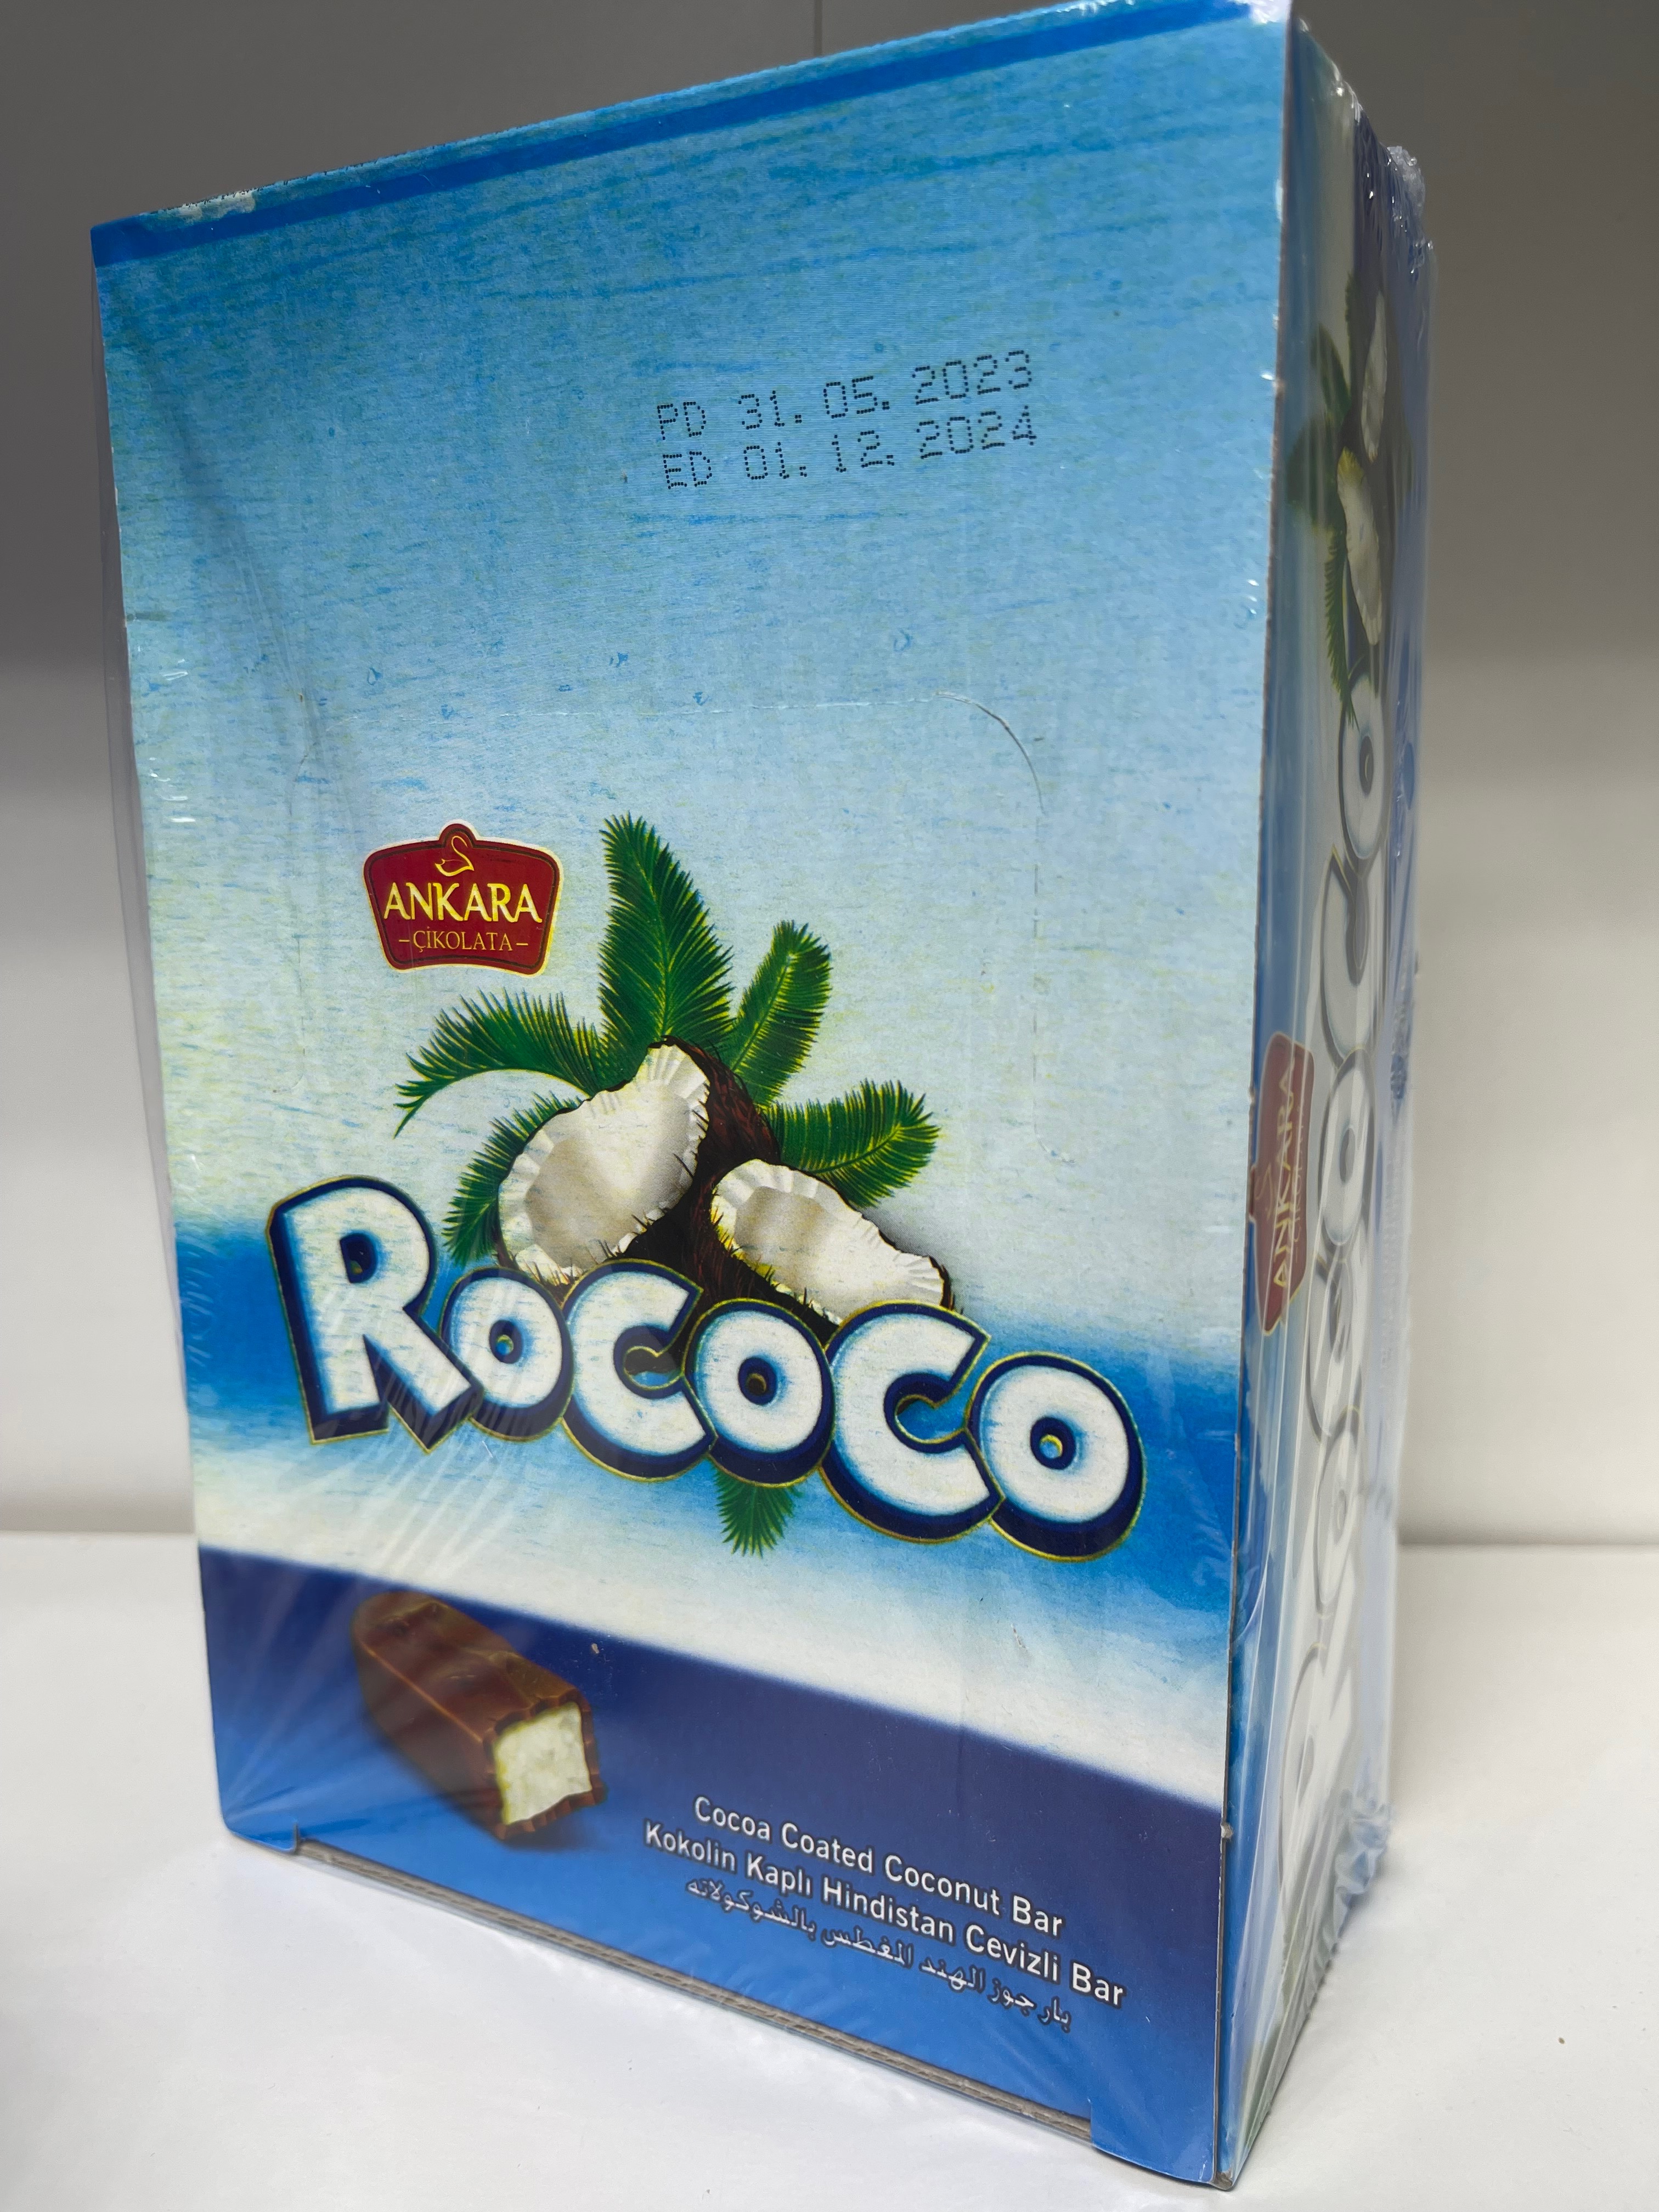 (Food) Rococo Cocoa Coated Coconut Bar